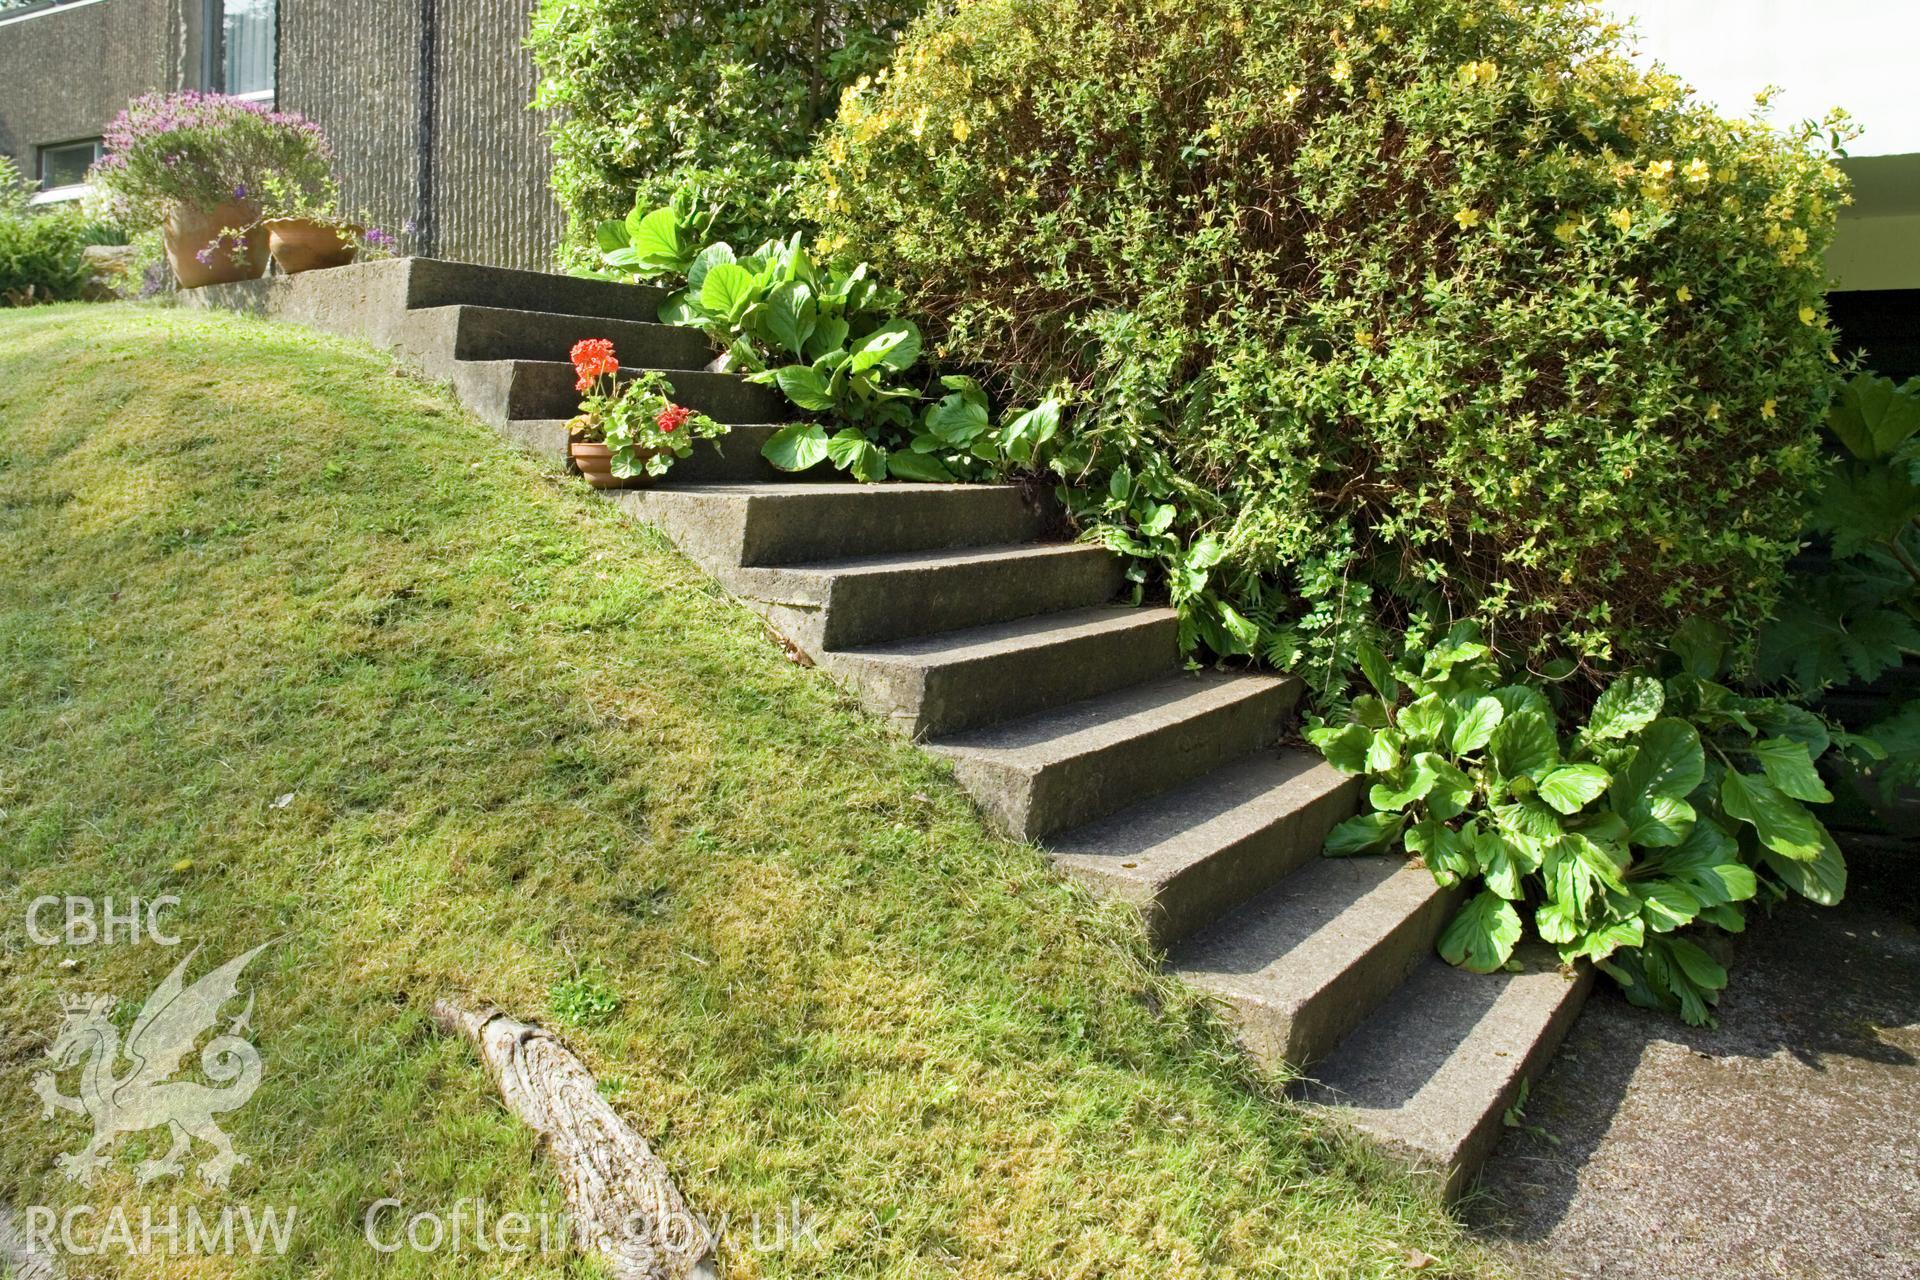 cast concrete approach steps.